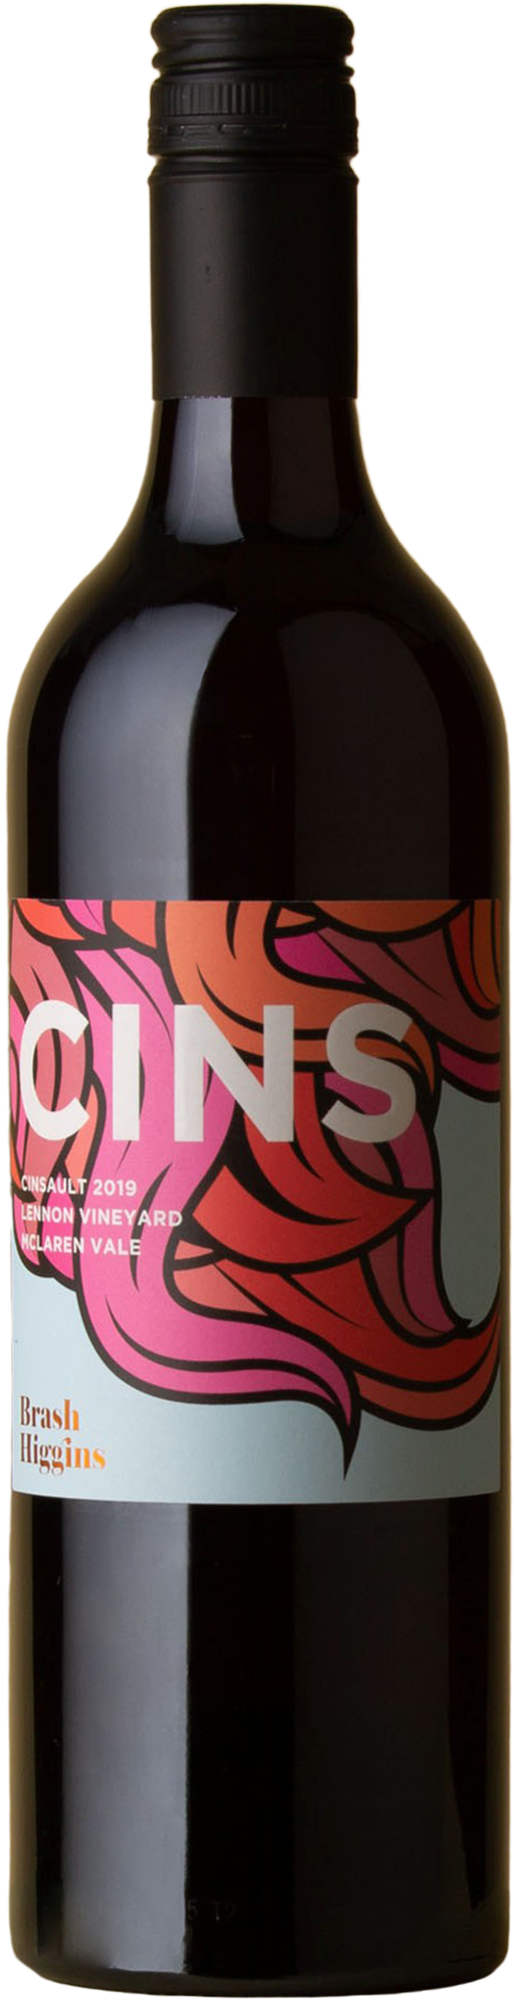 Brash Higgins - CINS Cinsault 2019 Red Wine